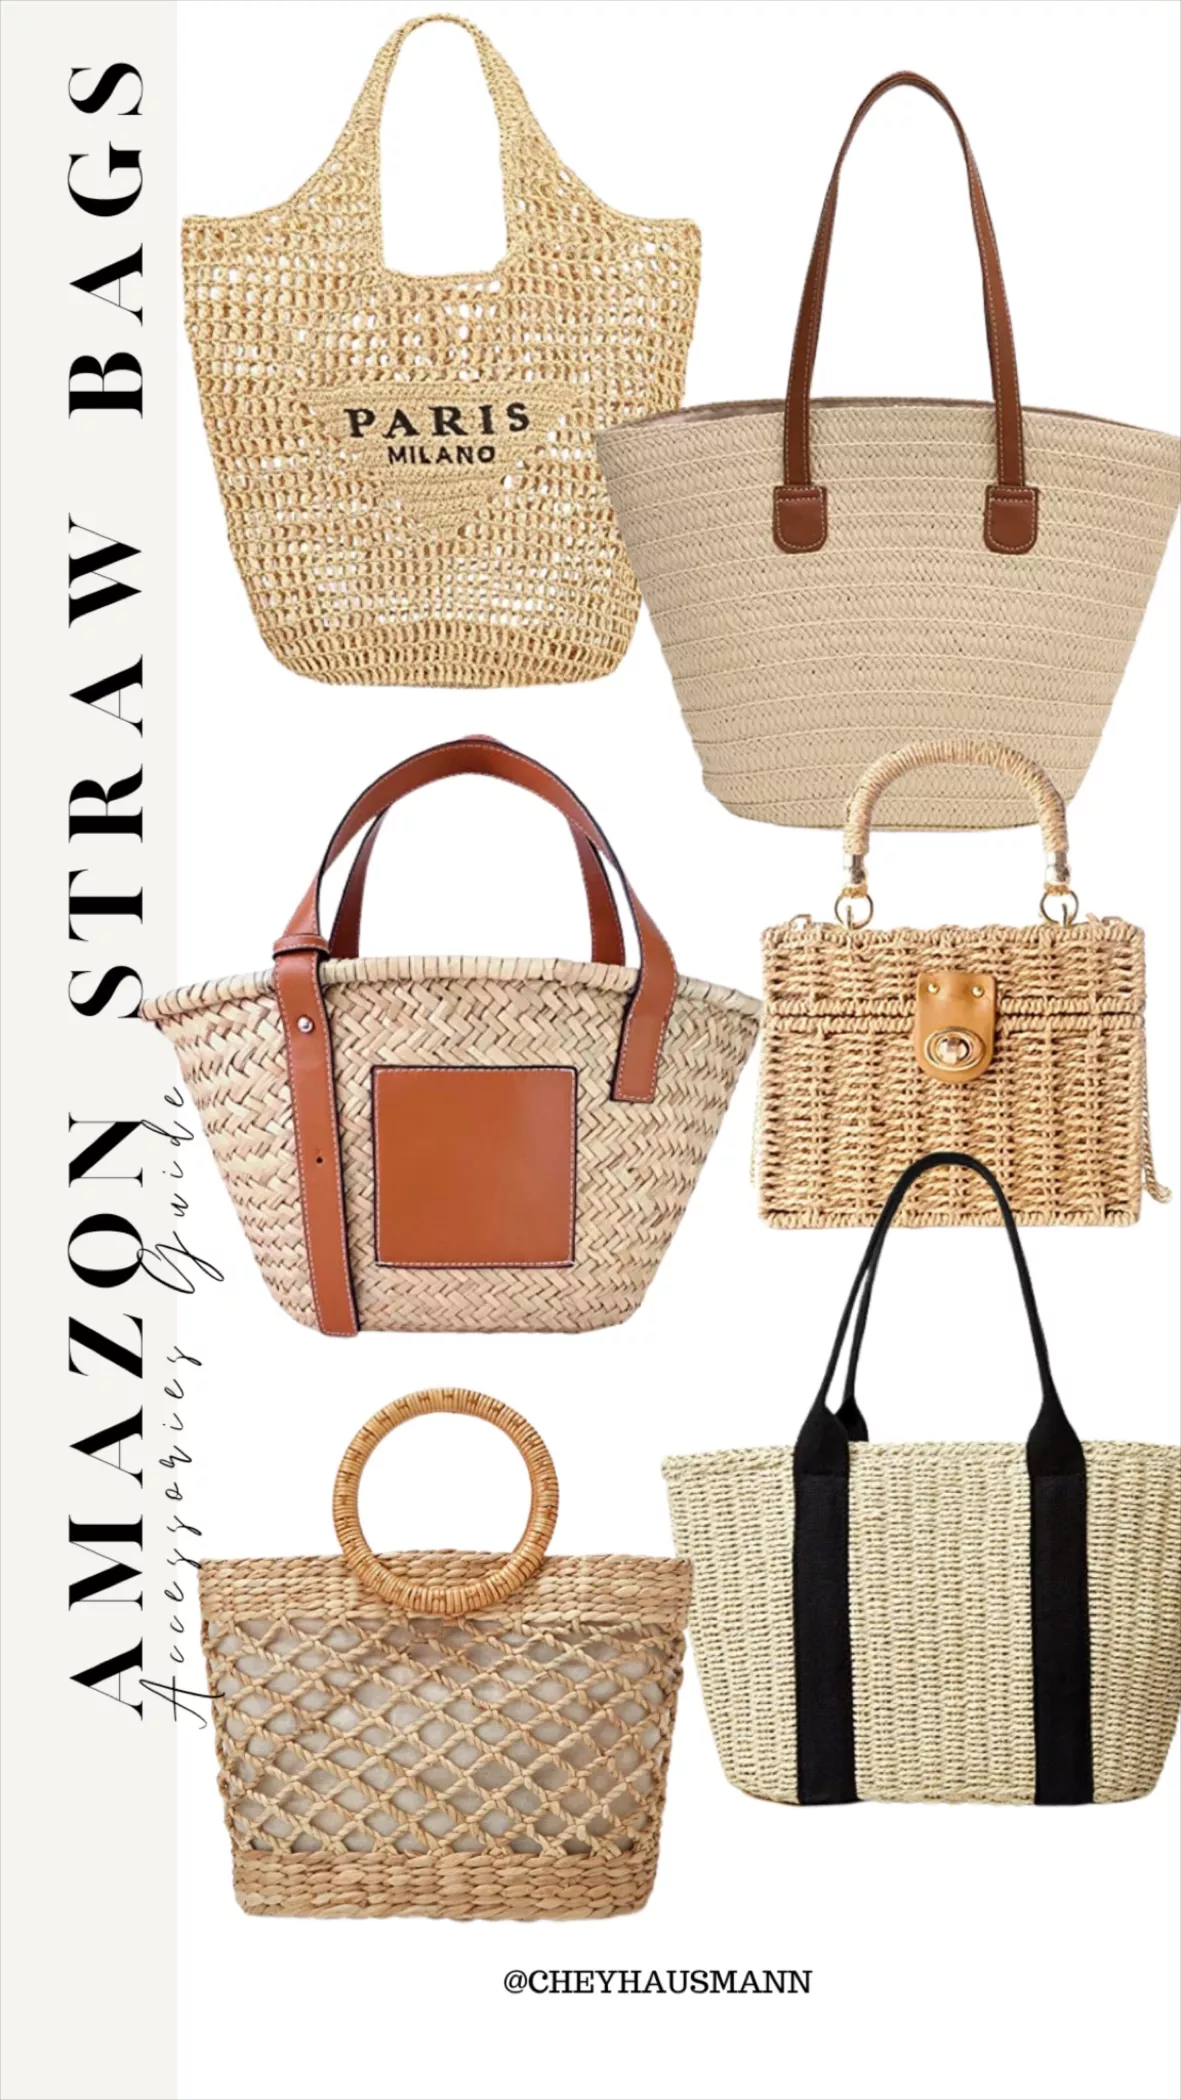  ZYYMMNN Beach Bag Straw Bags Women Summer Raffia Handbag Travel  Palm Basket Silk Scarf Tote : Clothing, Shoes & Jewelry